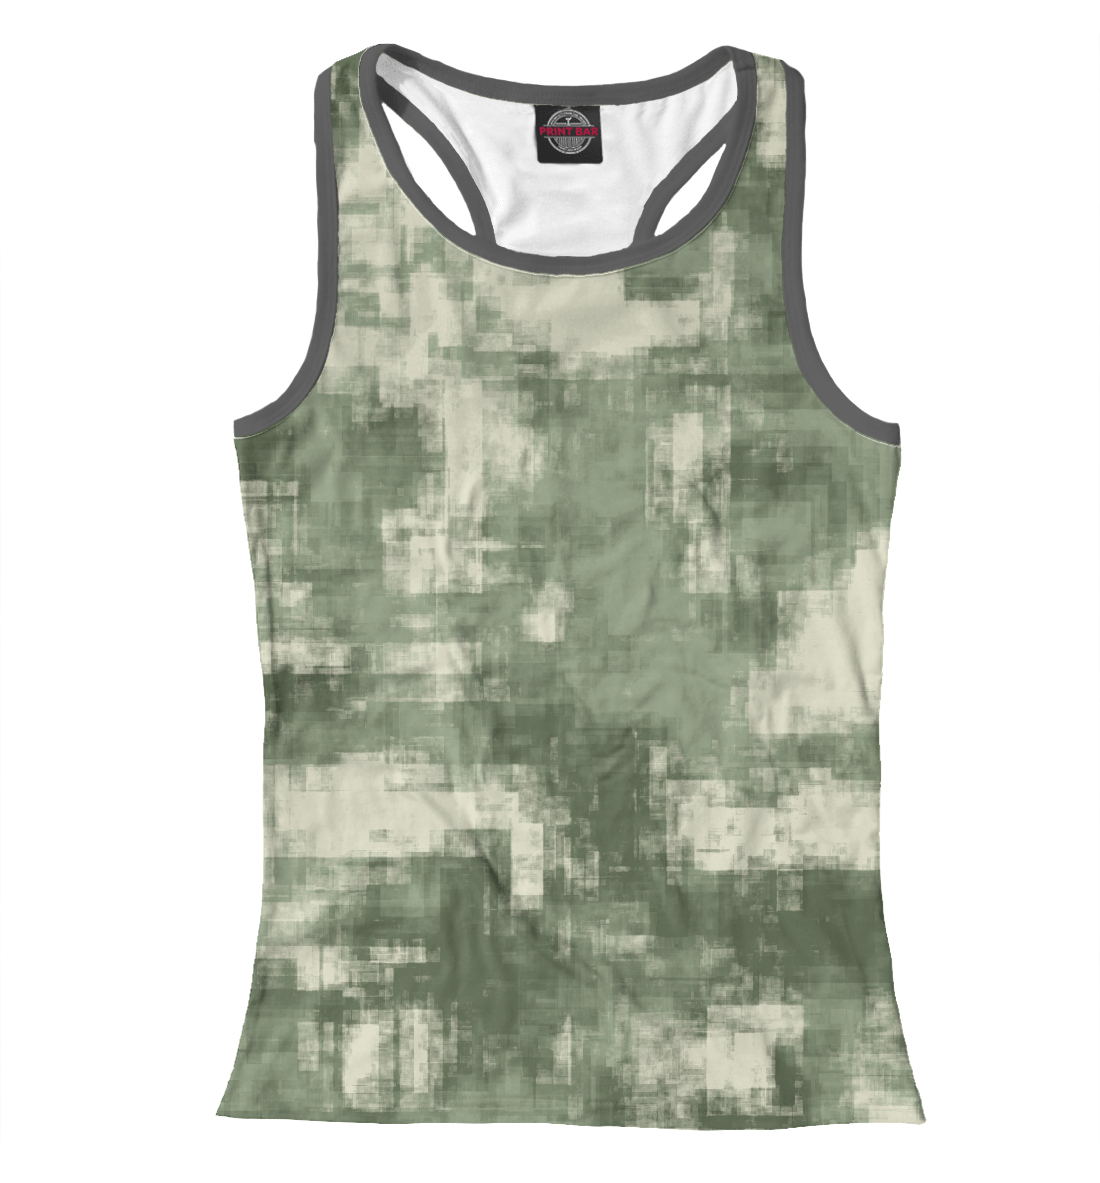 Женская Борцовка Военный камуфляж- одежда для мужчин и женщин, артикул CMF-442561-mayb-1mp